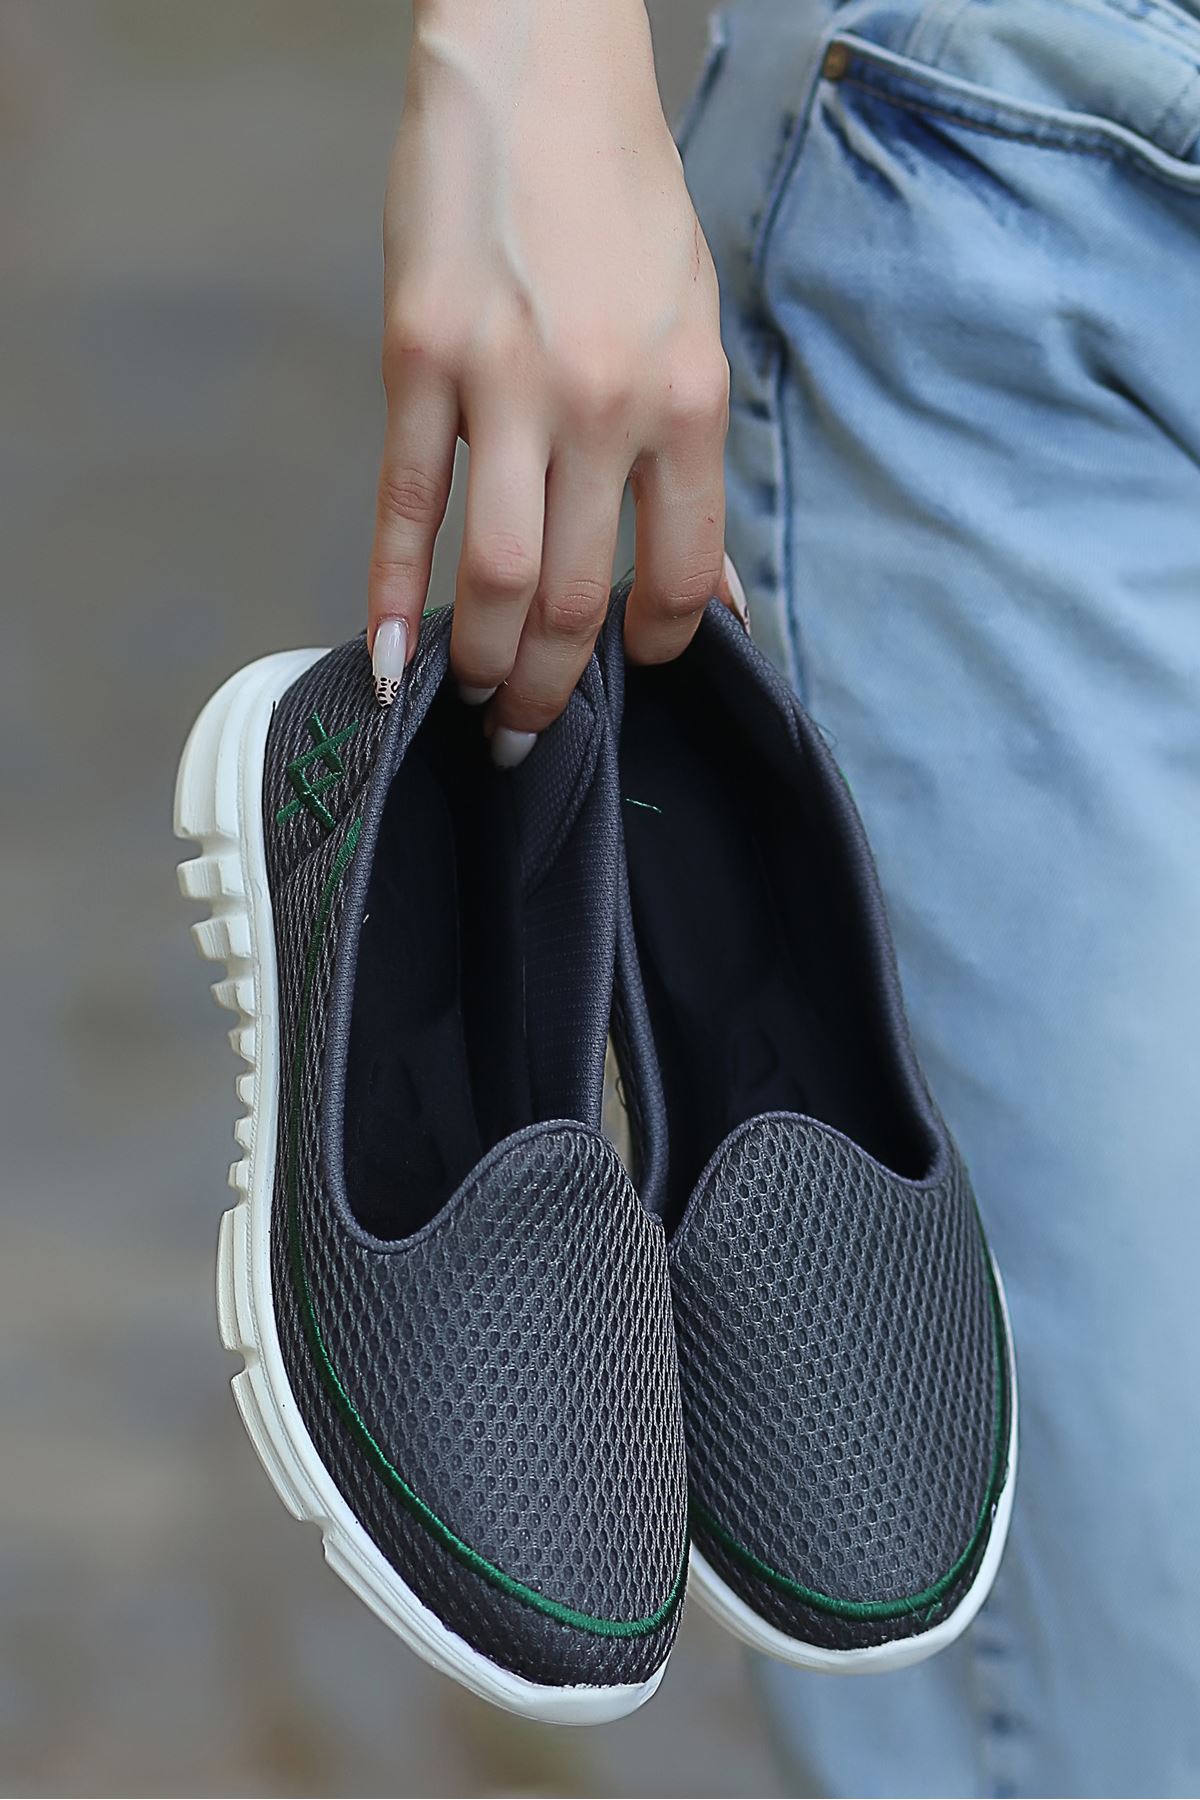 Trost Yeşil Dikiş Detay Tekstil Rahat Taban Kadın Spor Ayakkabı Füme BT